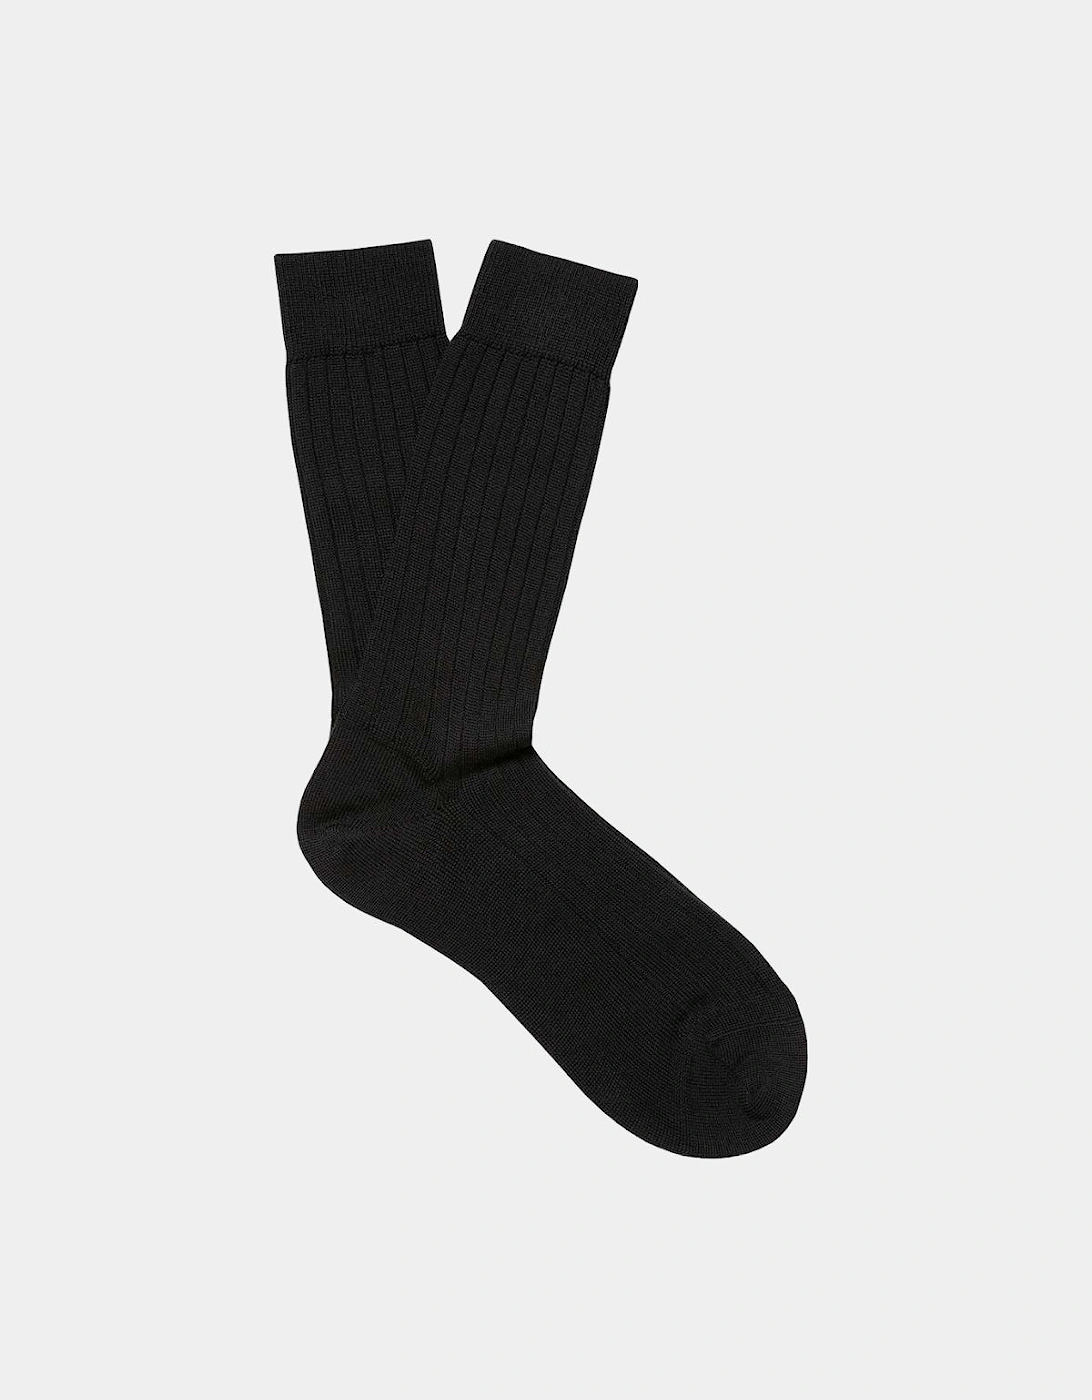 Rib Sock - Black, 3 of 2